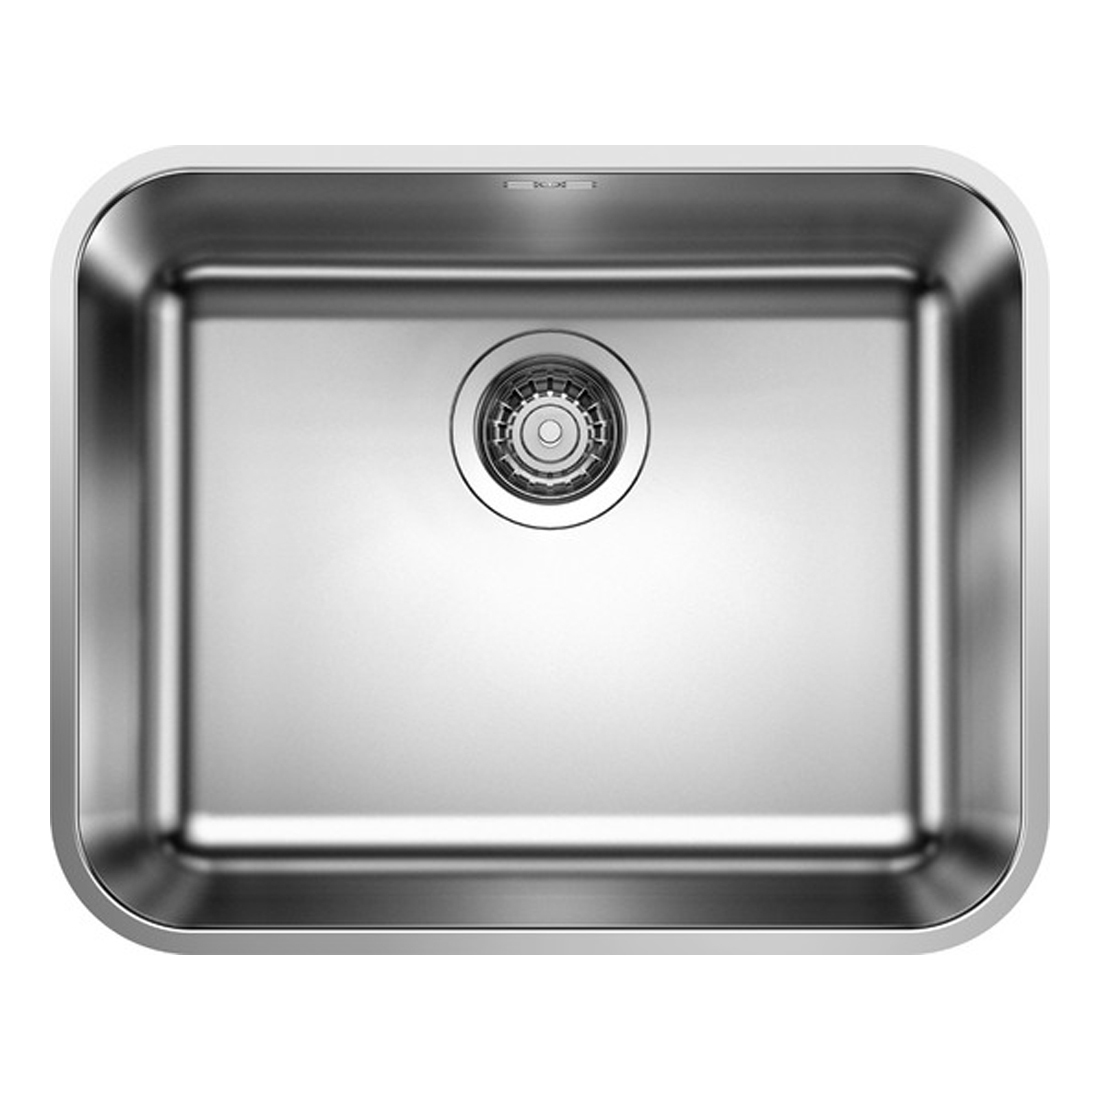 Кухонная мойка Blanco Supra 500-U полированная сталь набор аксессуаров inda indissima barra 400cns09n сталь